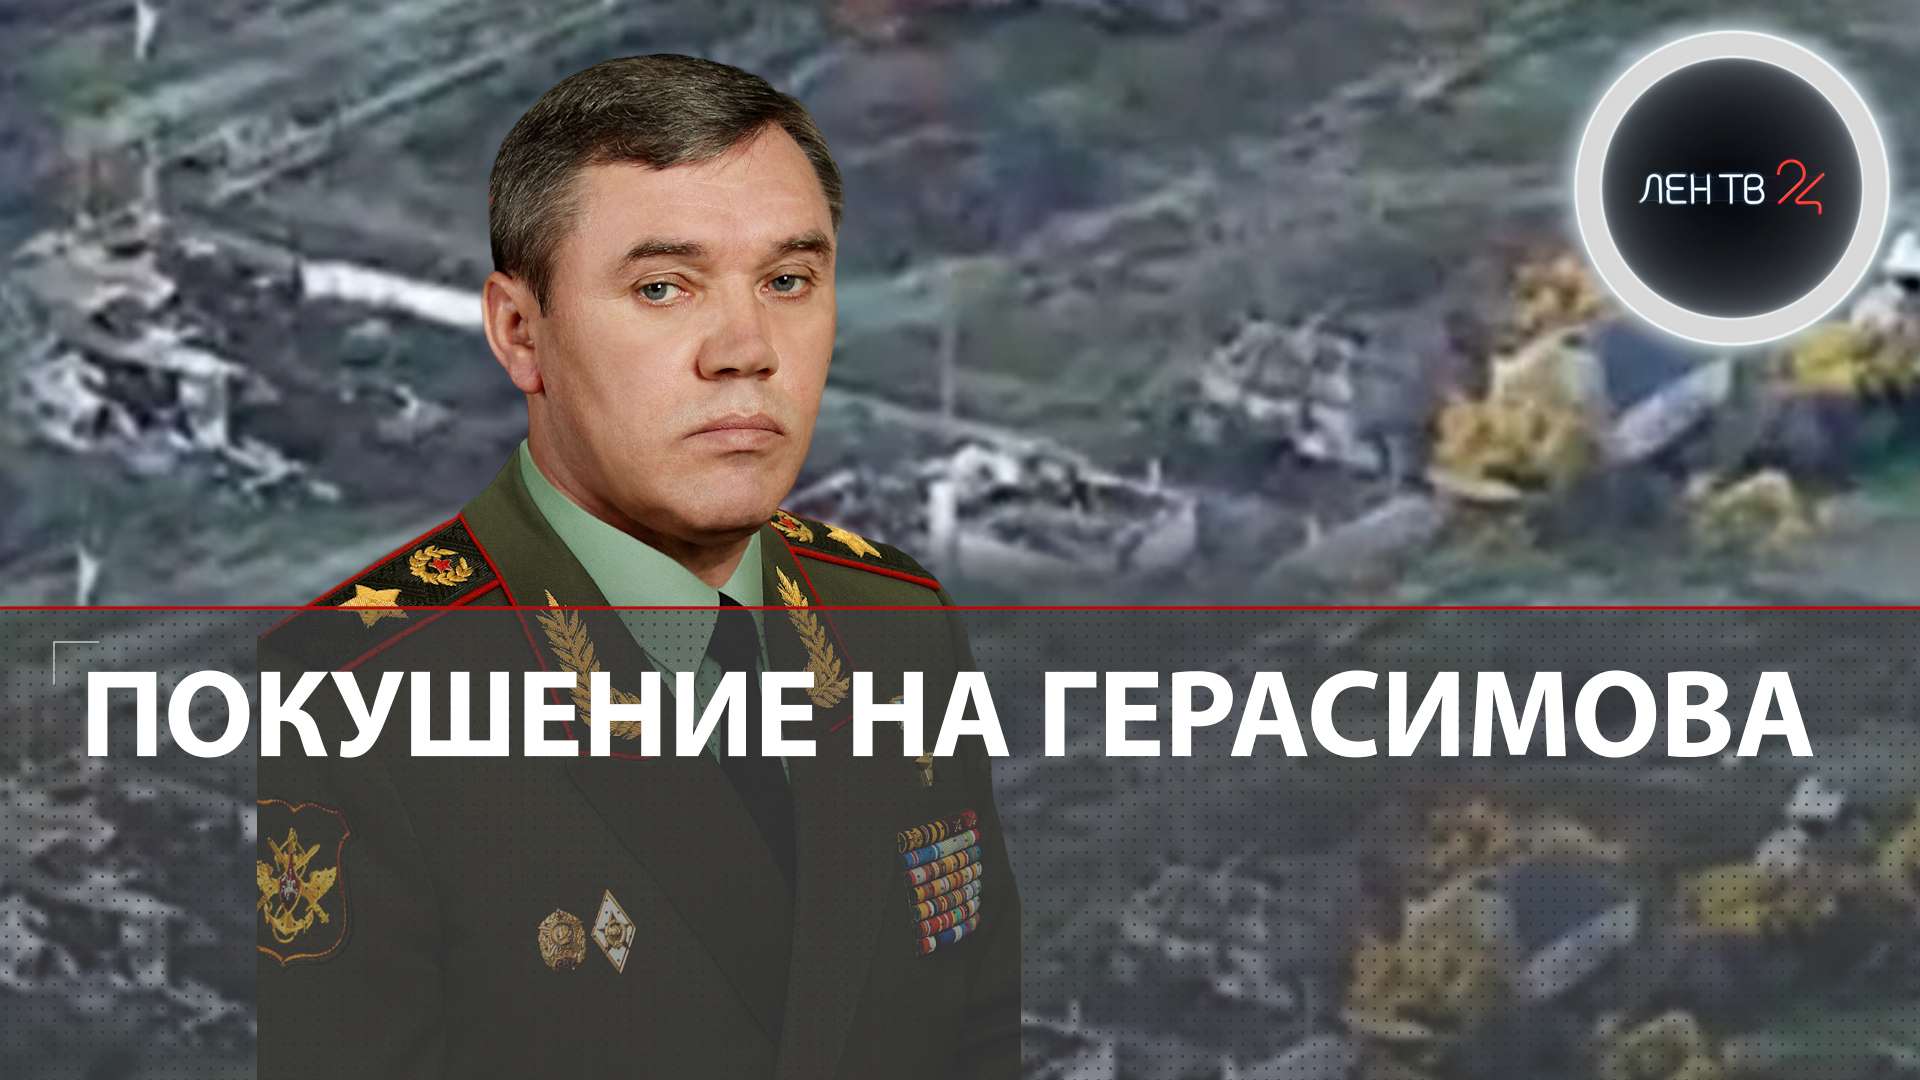 Покушение на Герасимова | Арестович подтвердил попытку покушения на генерала | США помешали Украине?